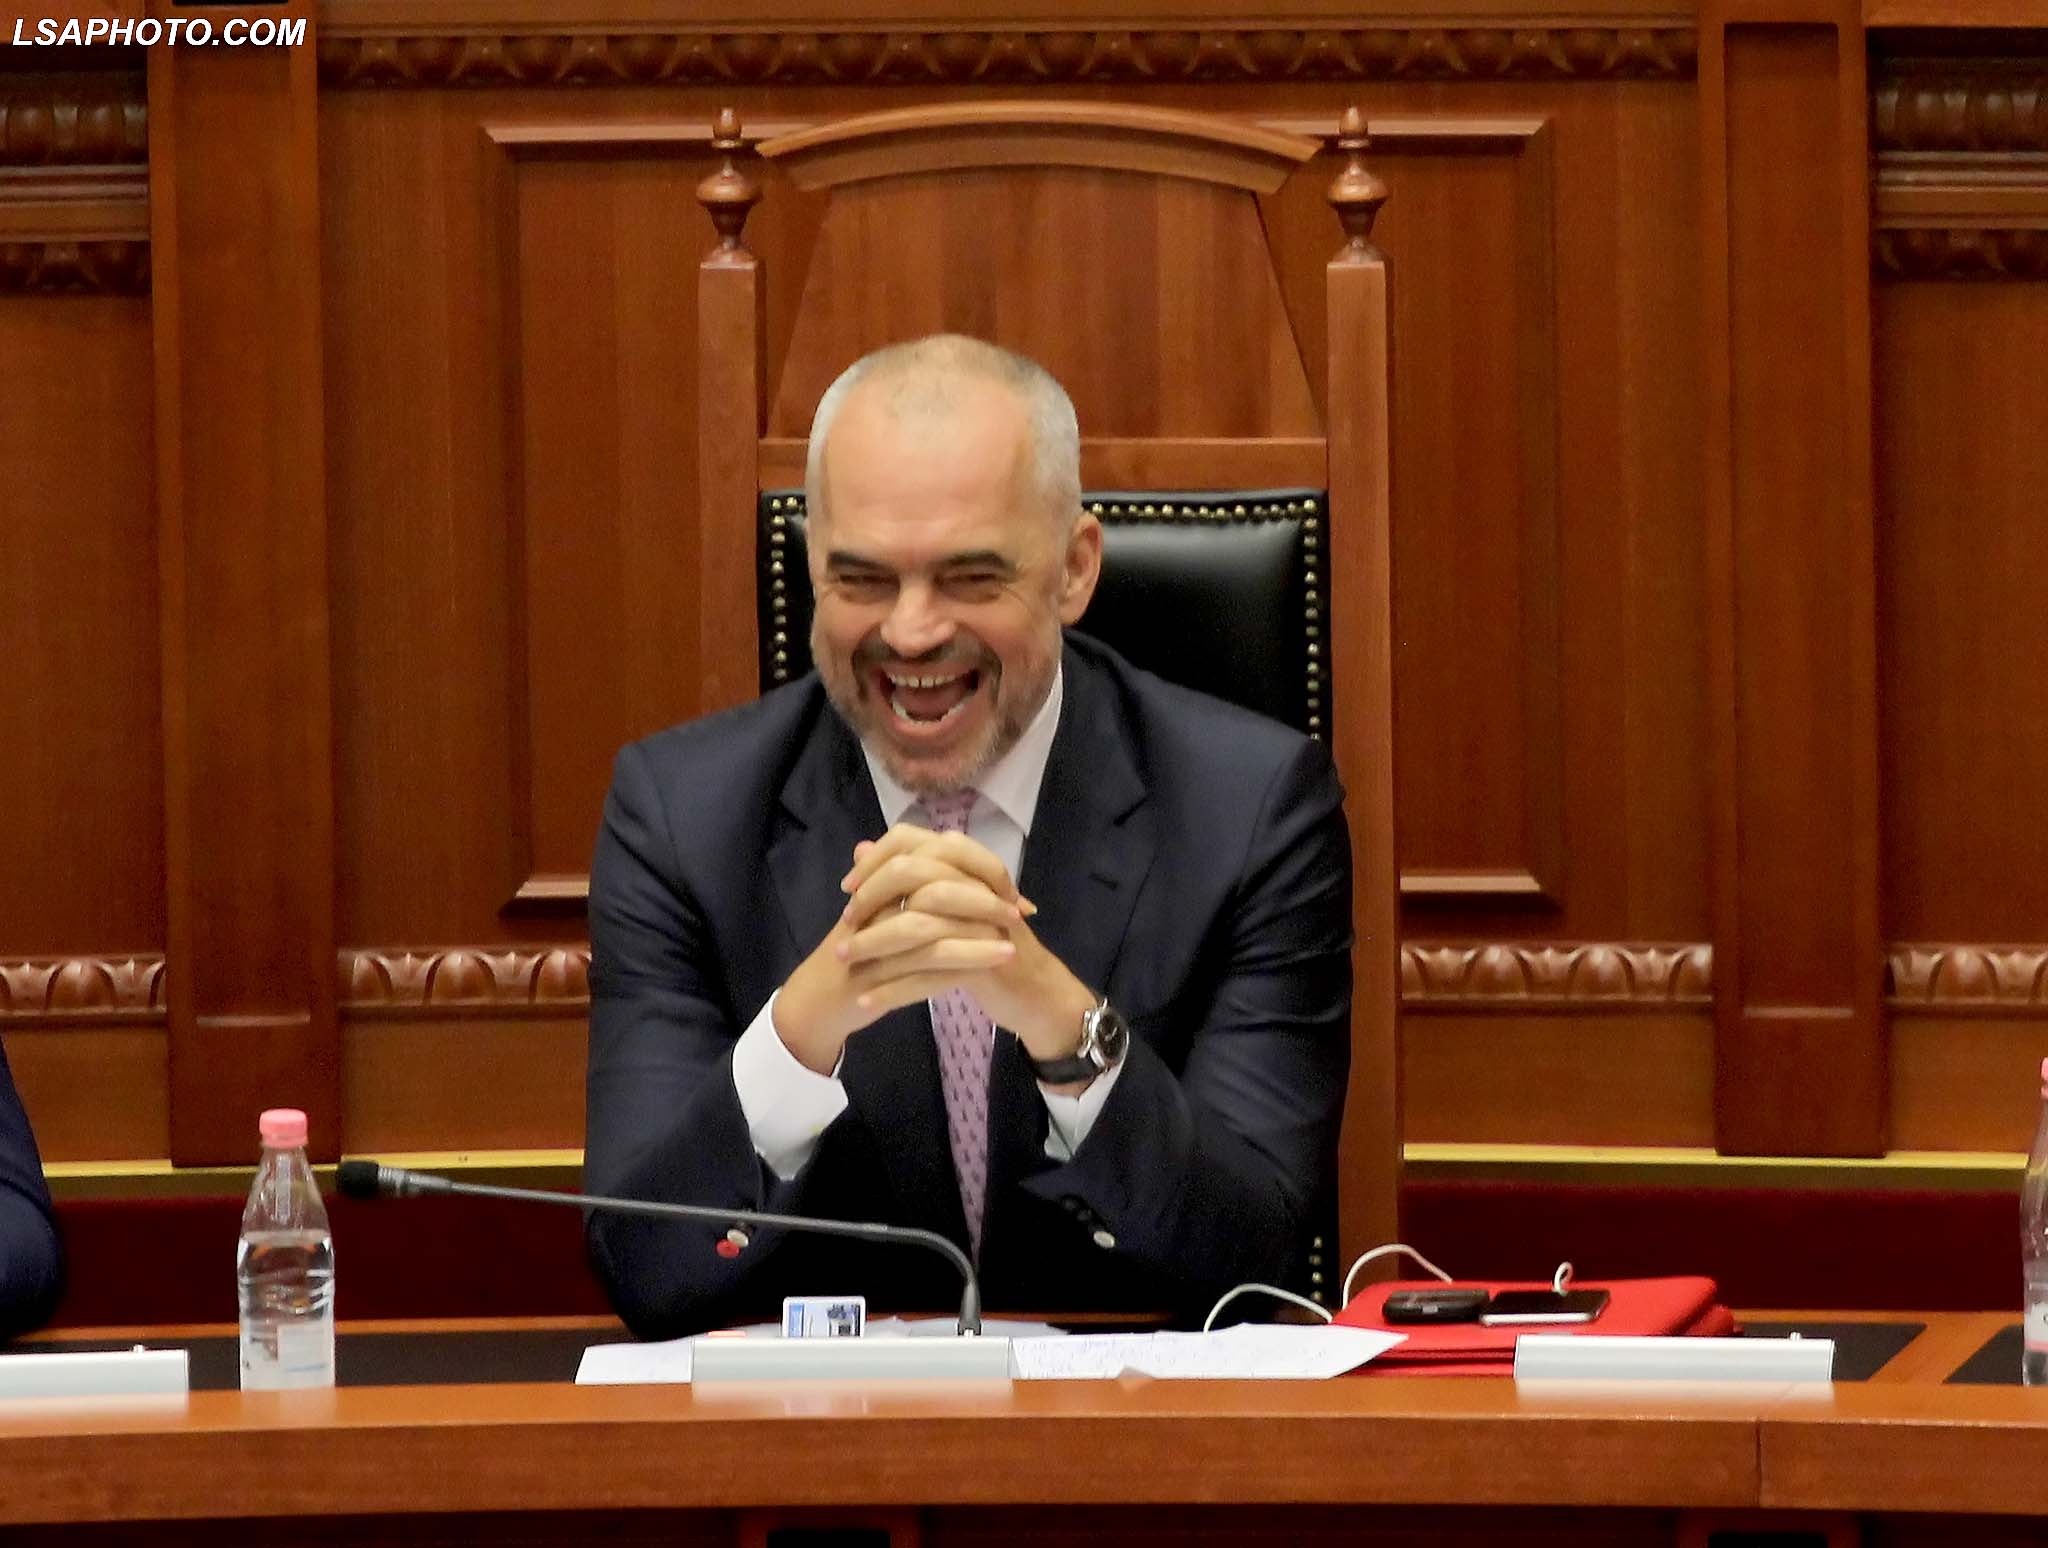 Kryeministri, Edi Rama, duke folur gjate seances se fundit parlamentare te sesionit te 6 te Kuvendit te Shqiperise, ku ne rend te dites jane projektligjet per Reformen ne Drejtesi./r/n/r/nPrime Minister Edi Rama, speaks during a parliamentary session.